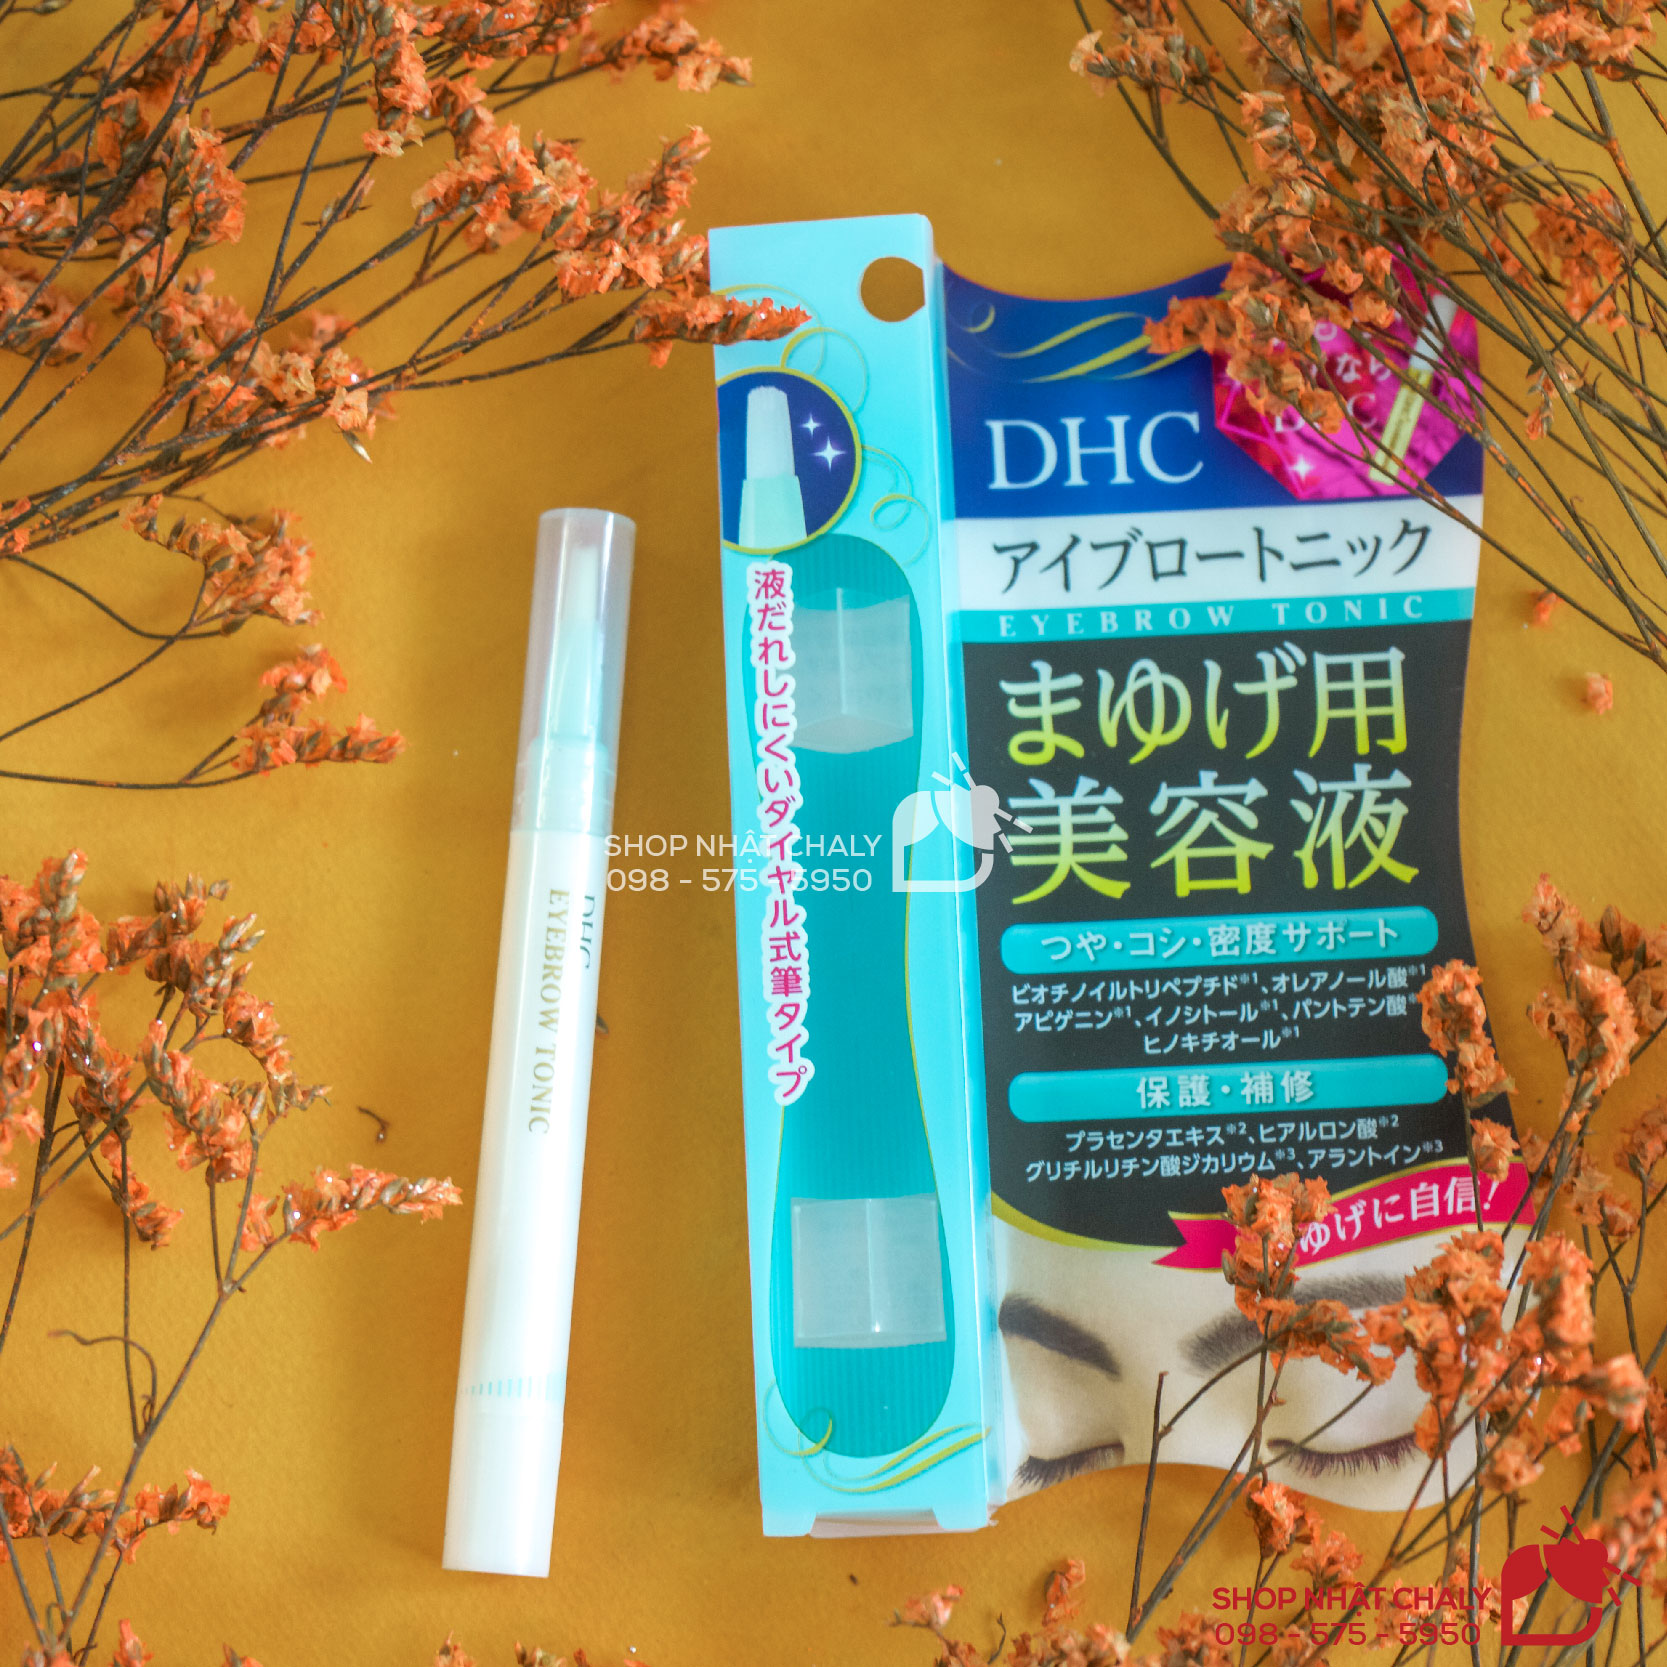 Serum dưỡng mày DHC thiết kế như cây bút lông dễ dàng thoa tonic vào lông mày. Đây là mẫu 2019